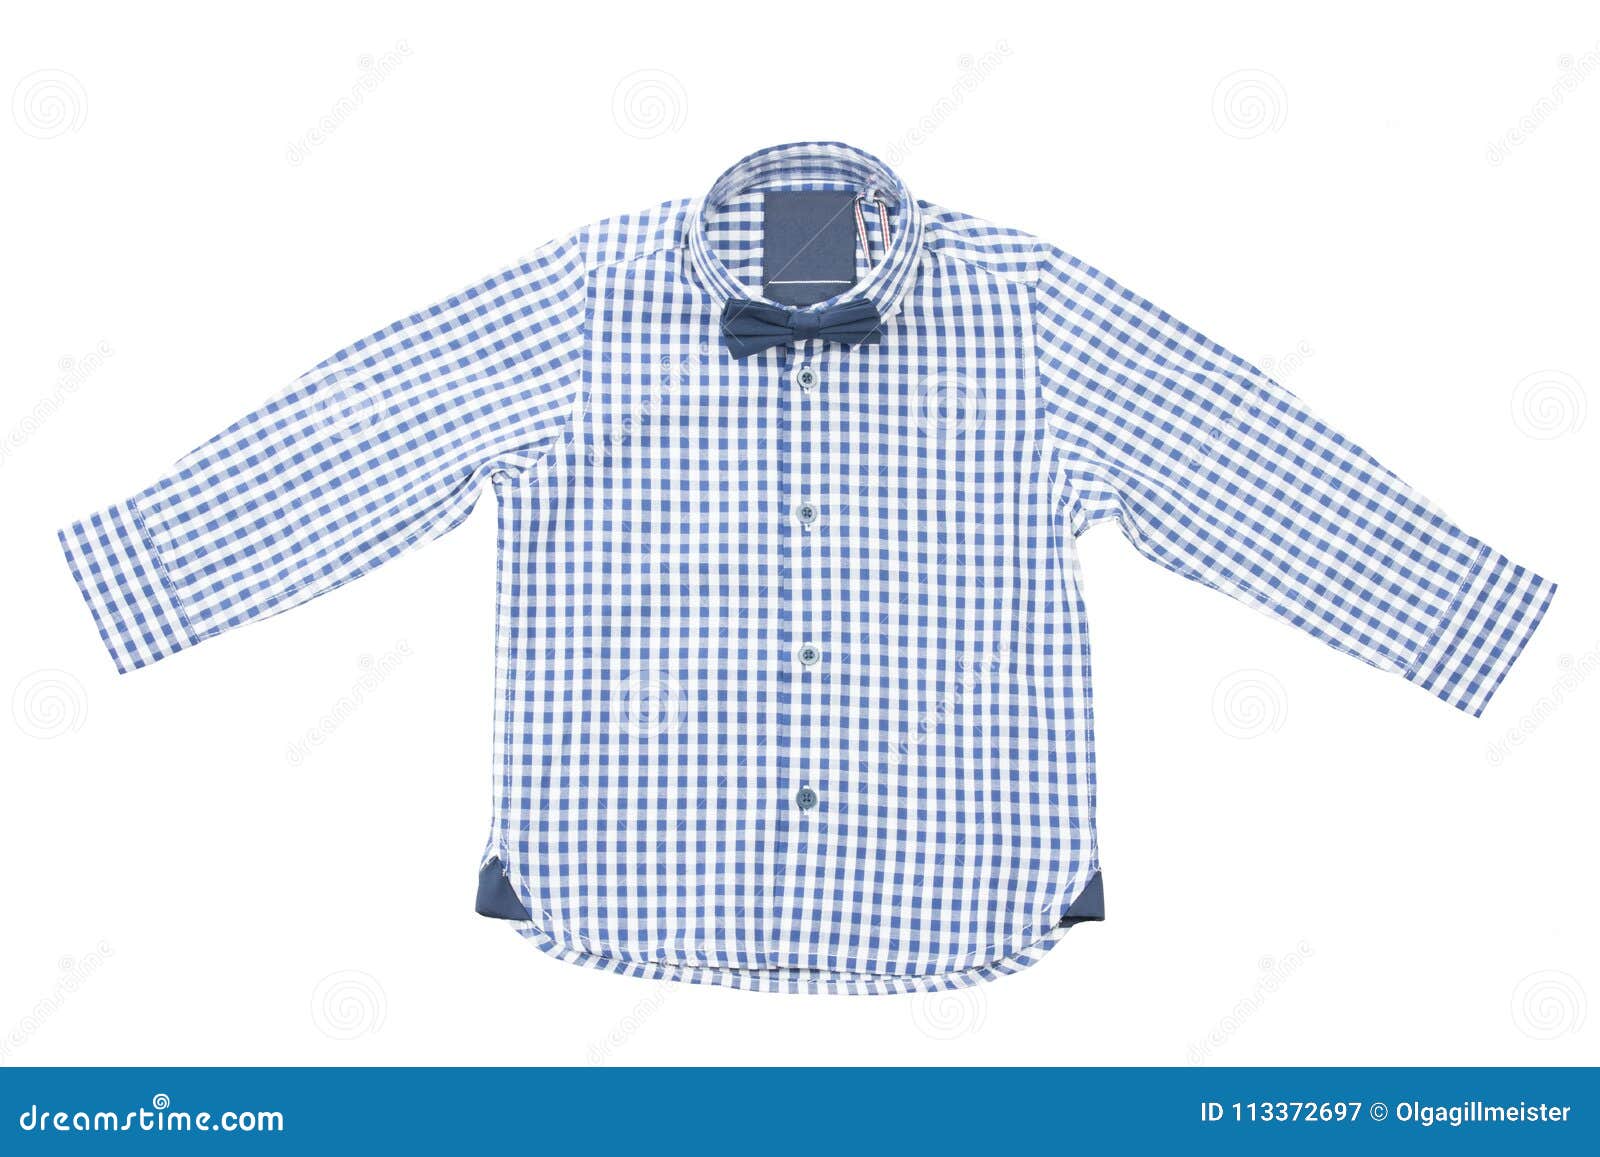 Camisa a Cuadros Blanca Azul De Los Niños Con La Corbata De Lazo Imagen de archivo - Imagen modelo, 113372697